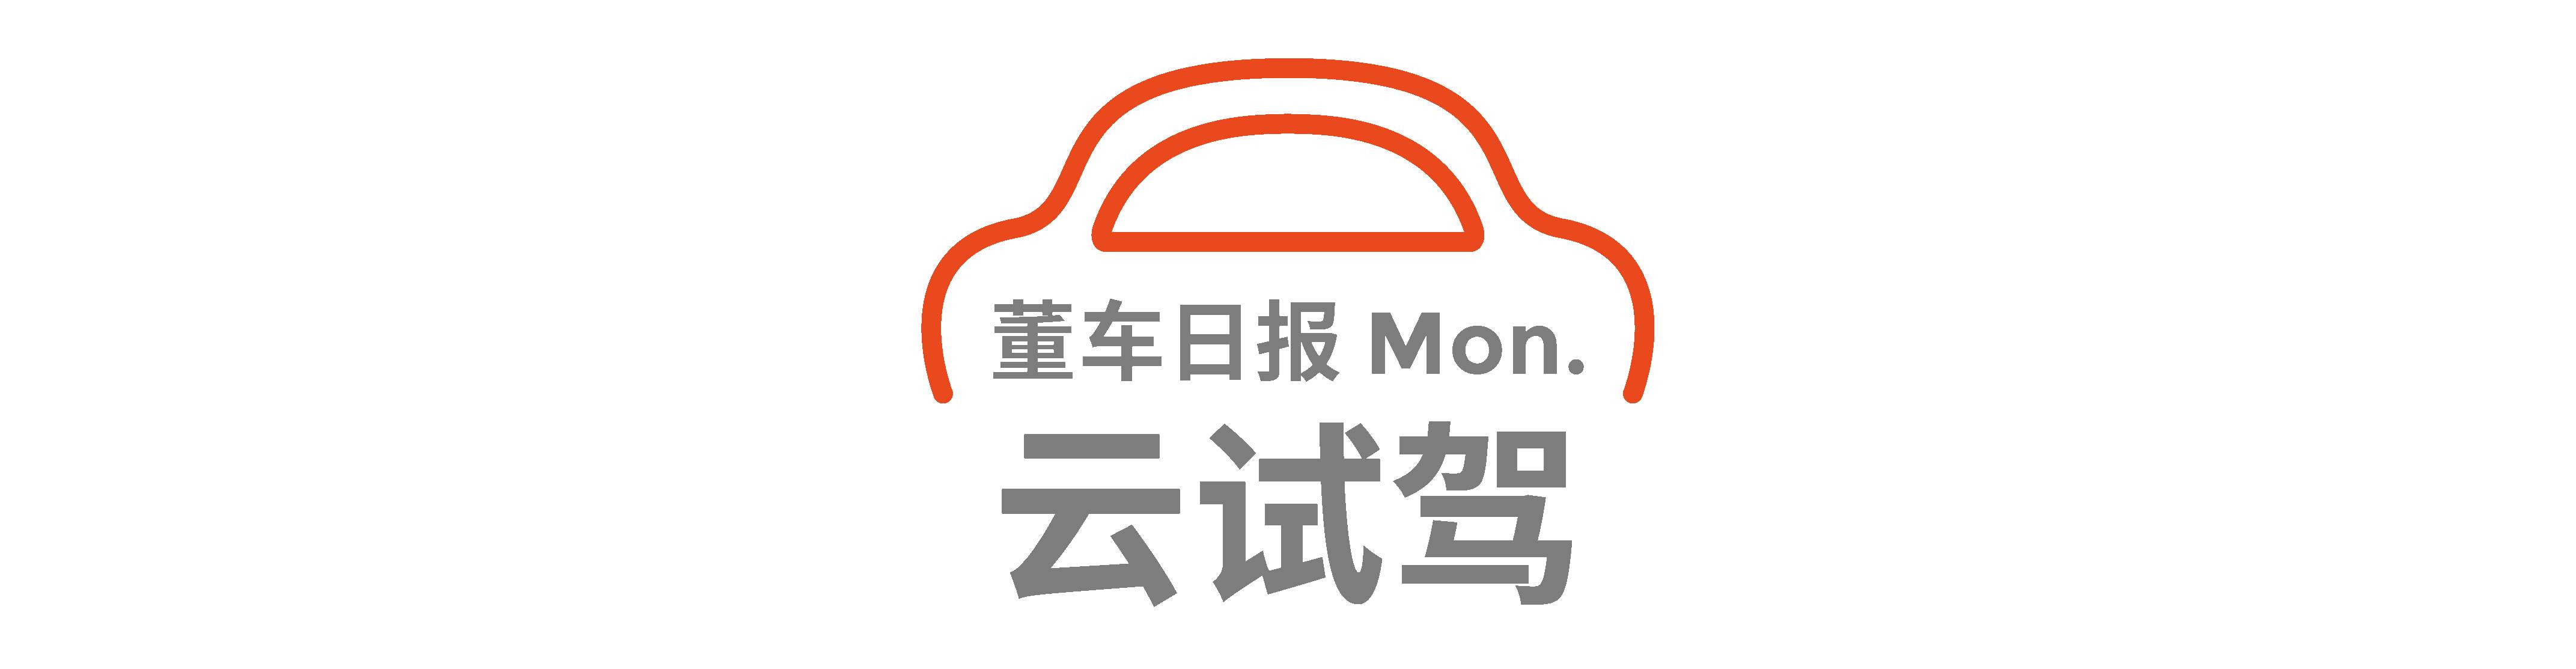 Dong Che Daily Tesla veröffentlicht das vollautomatisierte Fahrsystem Beta 9.0 / Audis Projekt für autonomes Fahren wird 2025 in Serie gehen / Xiaomi beschleunigt den Prozess der Autoherstellung - mon